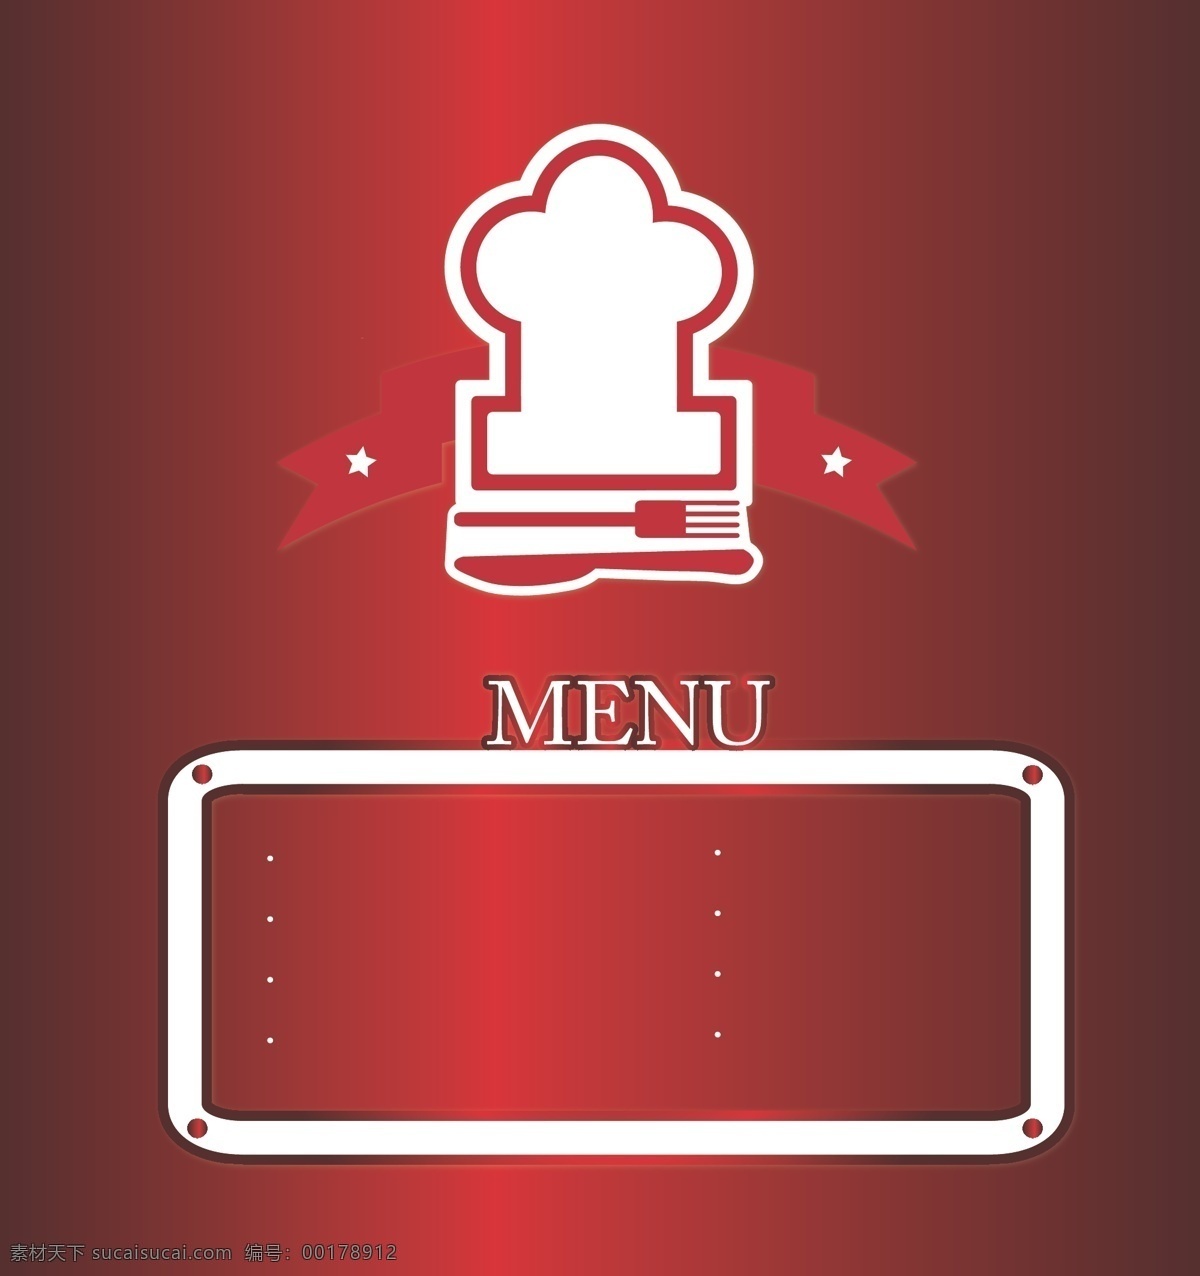 餐 单 元素 矢量 边框 菜单设计 餐具 餐厅菜单 厨师帽 创意设计 刀叉 模板 设计稿 时尚菜单 素材元素 源文件 矢量图